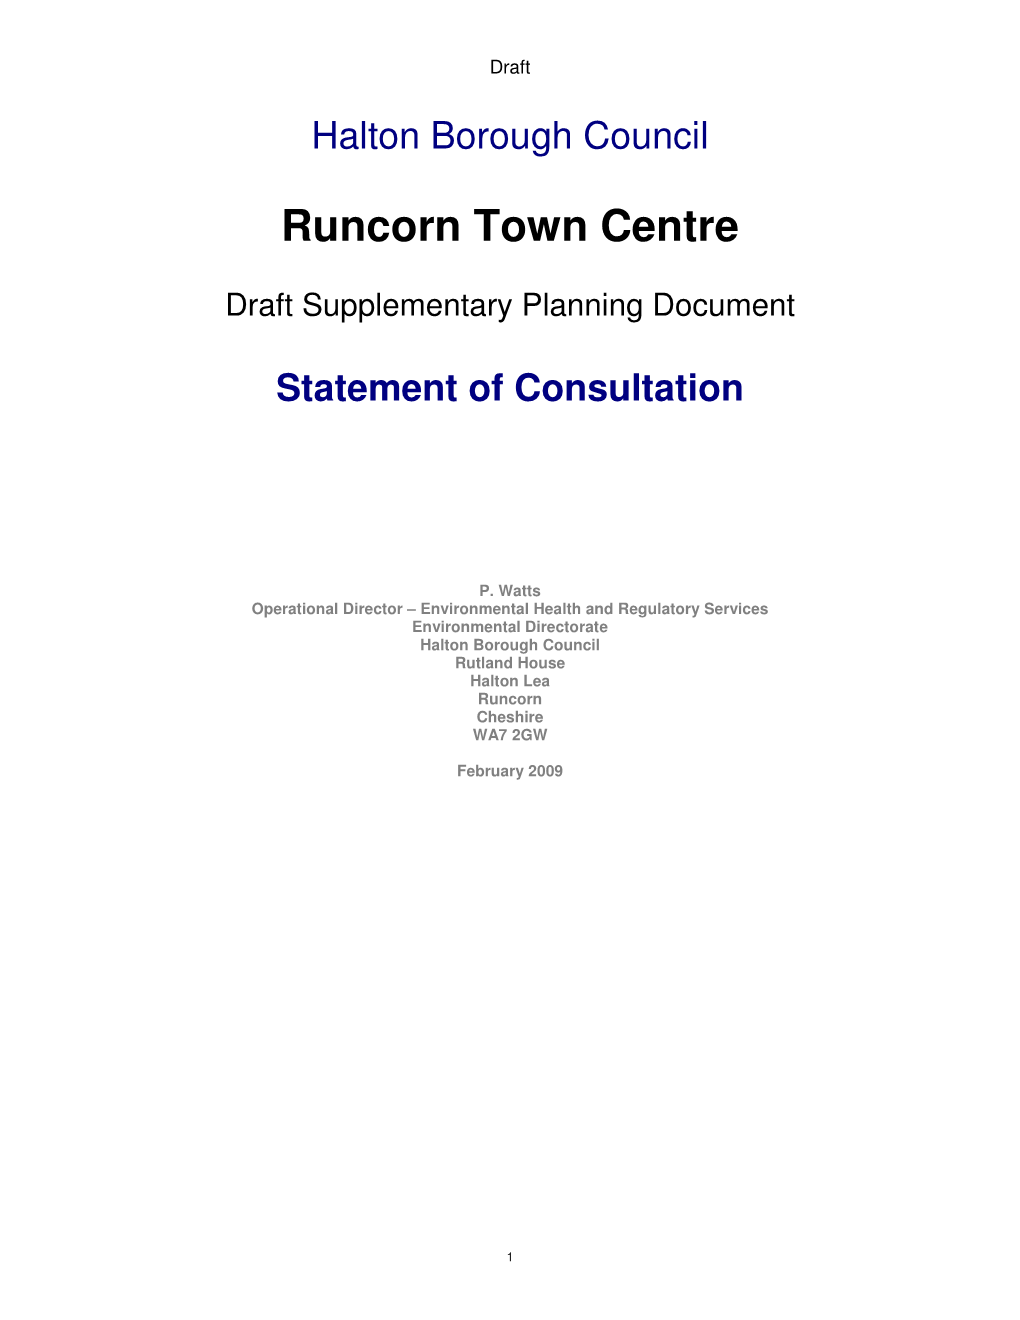 Runcorn Town Centre